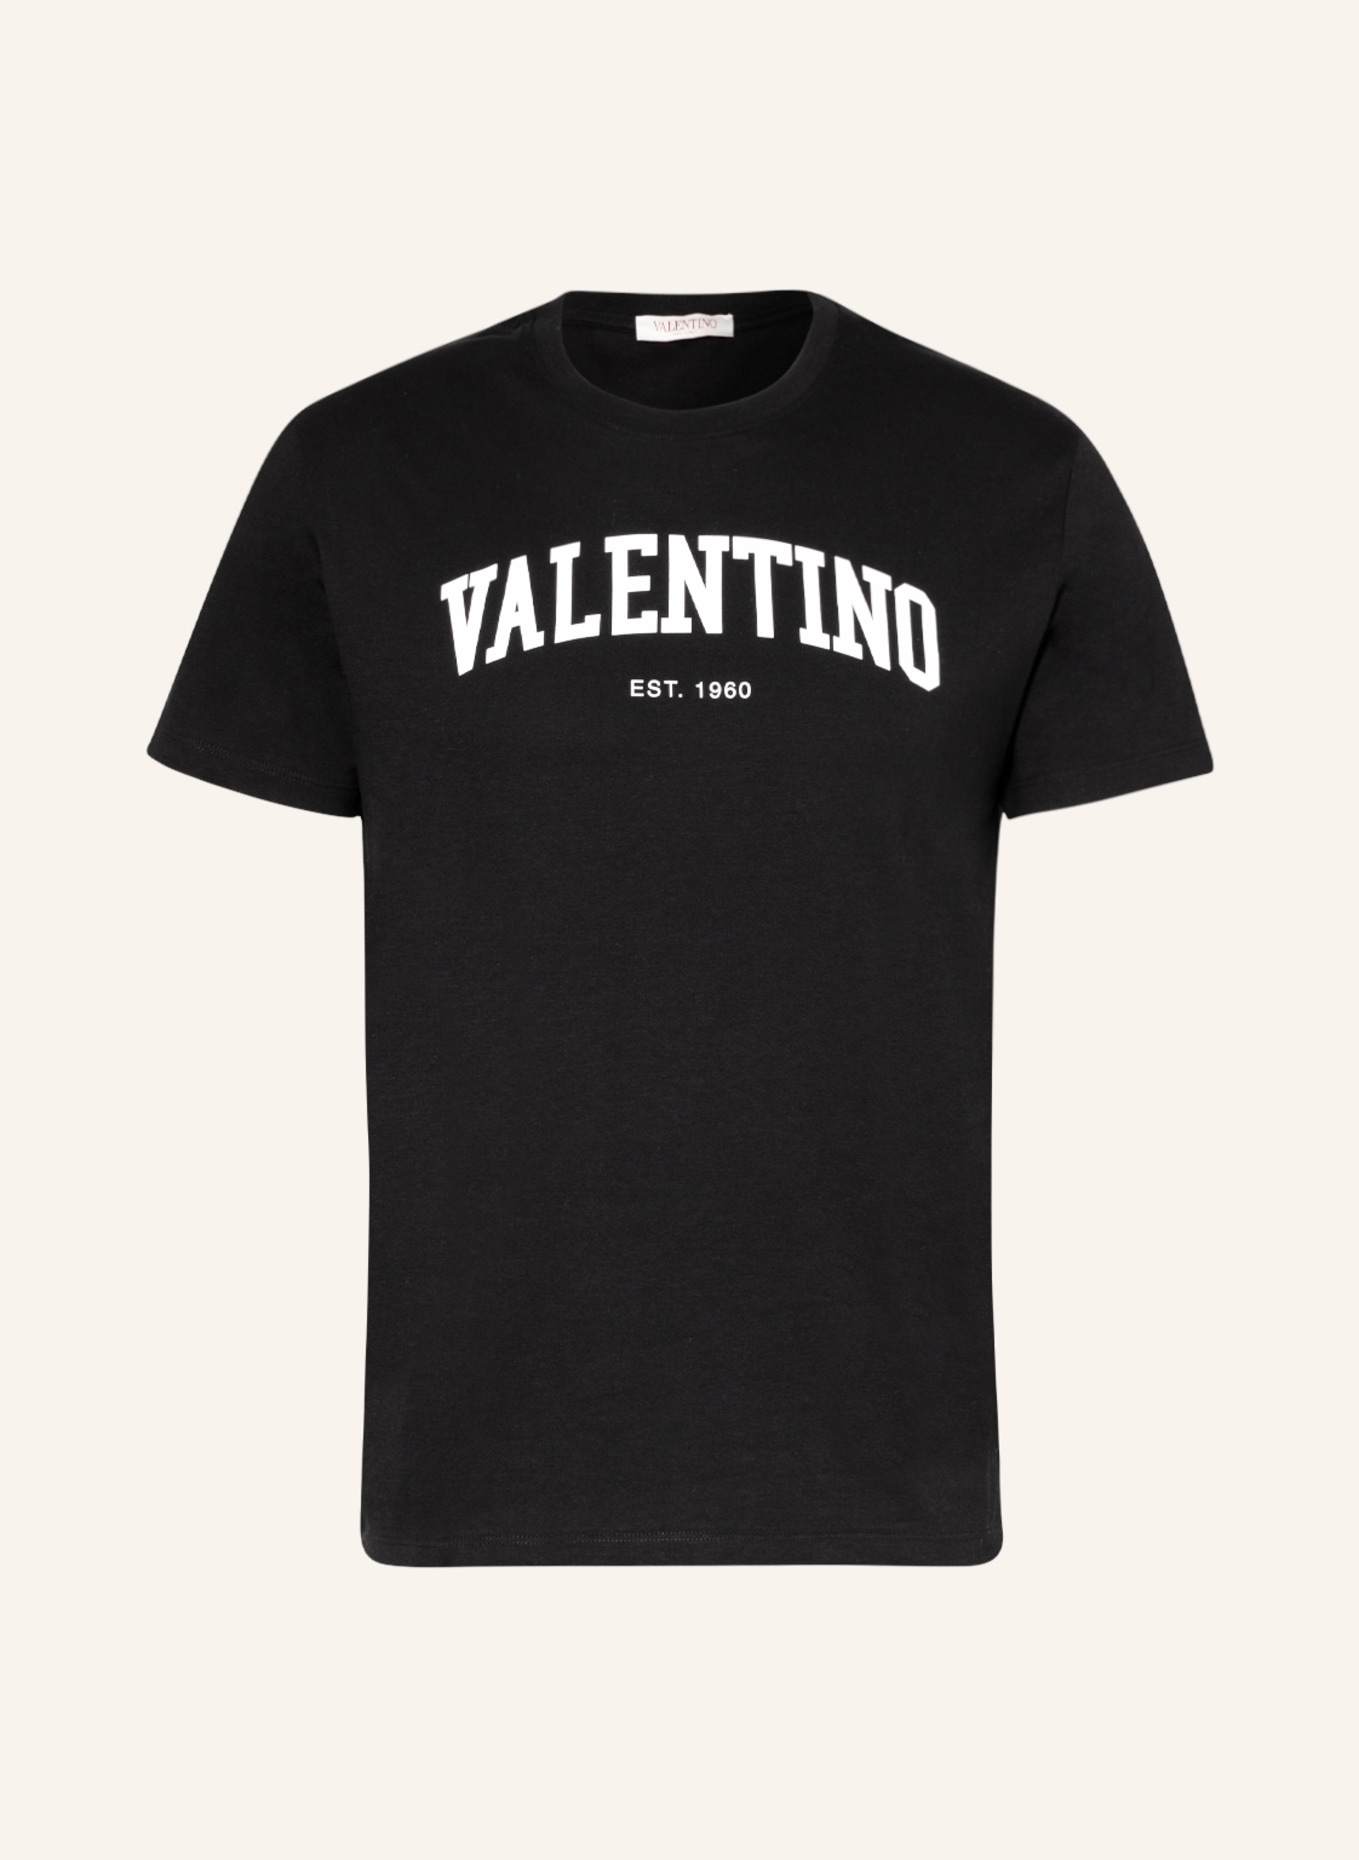 VALENTINO T-Shirt, Farbe: SCHWARZ/ WEISS (Bild 1)